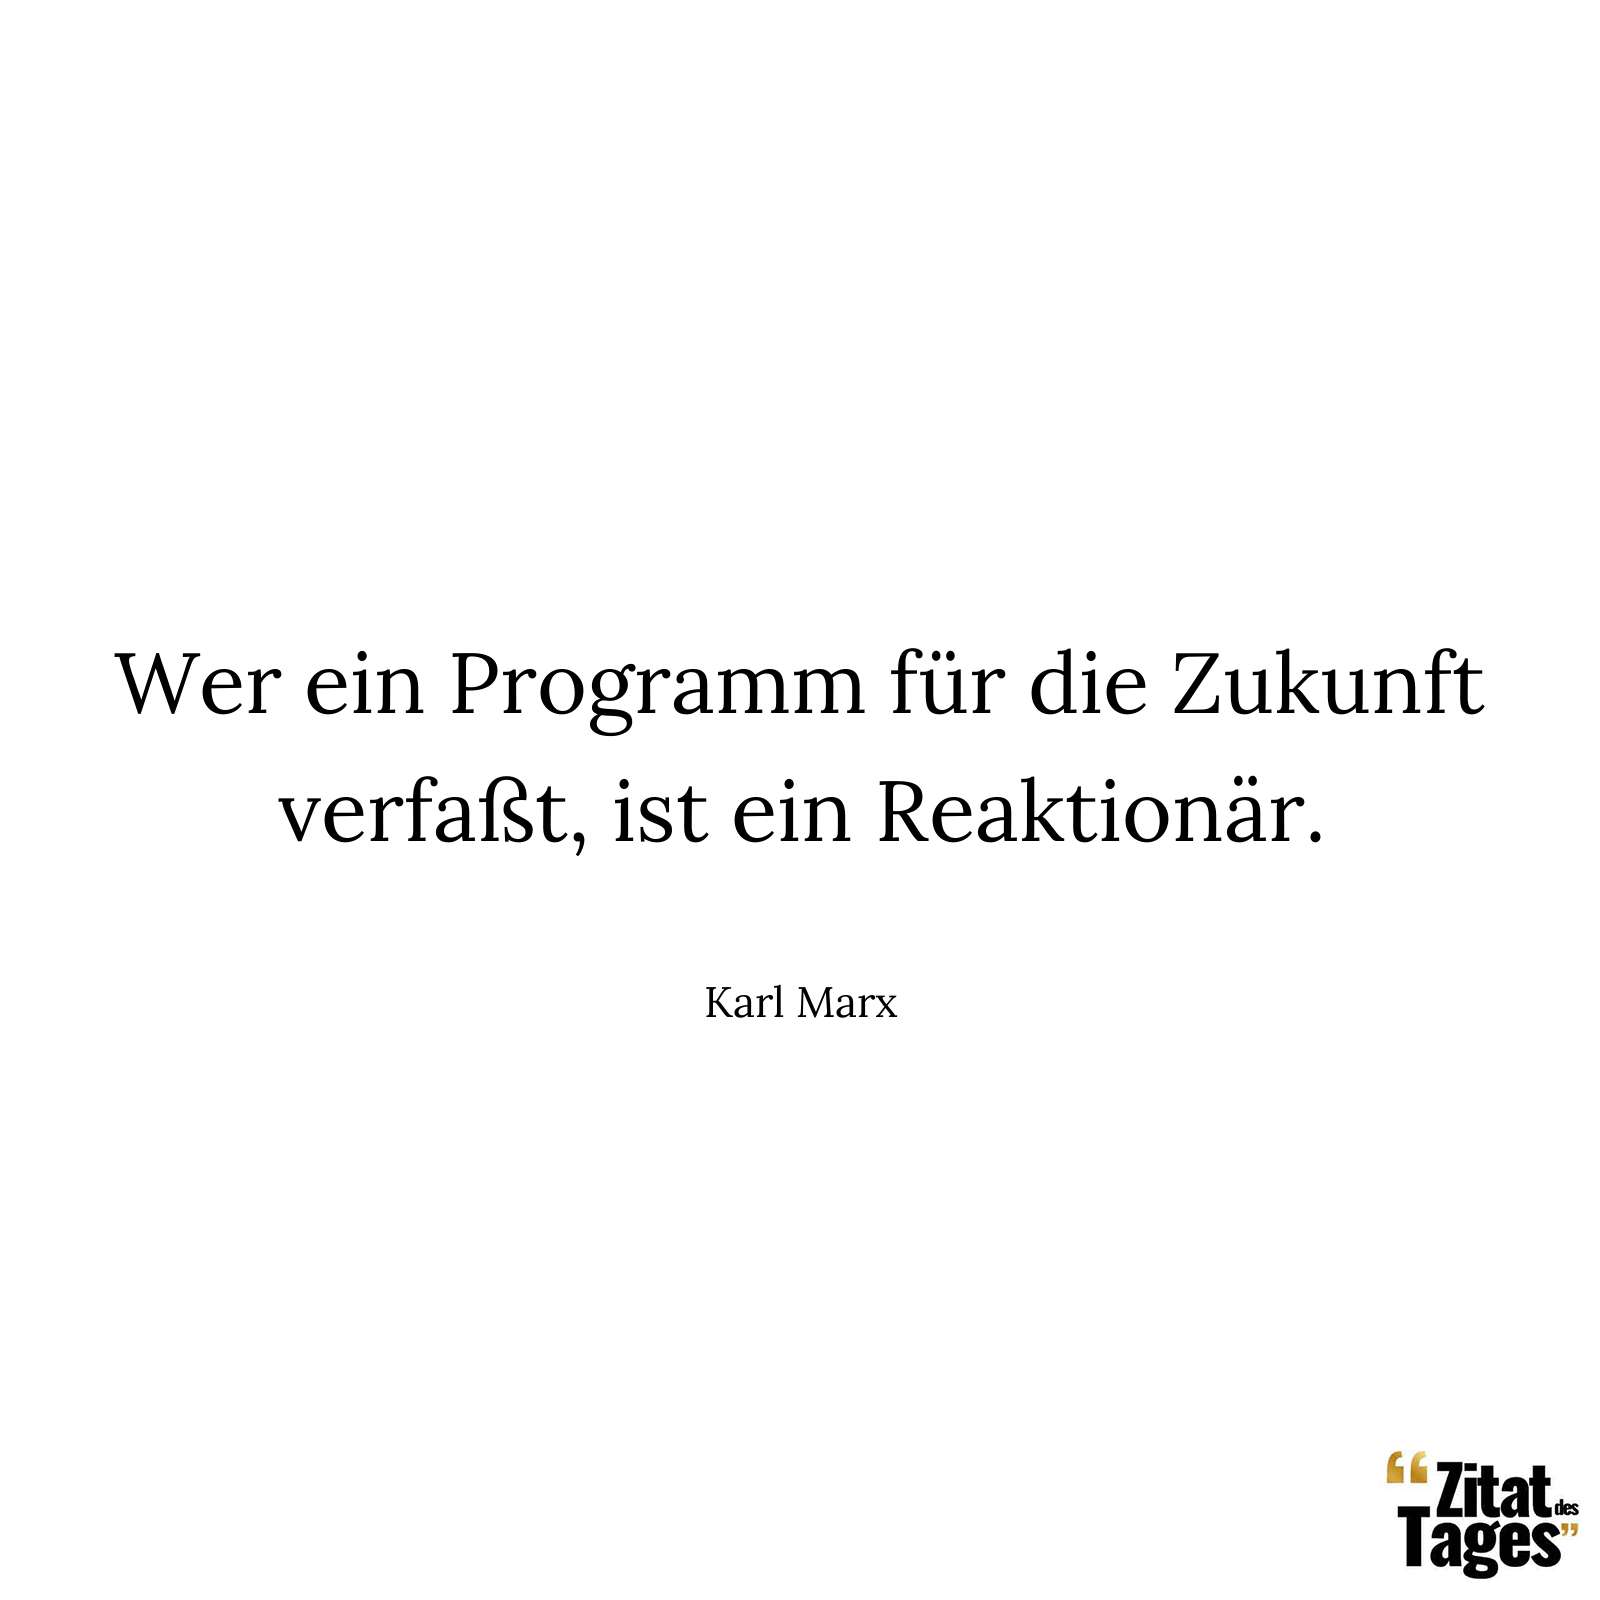 Wer ein Programm für die Zukunft verfaßt, ist ein Reaktionär. - Karl Marx